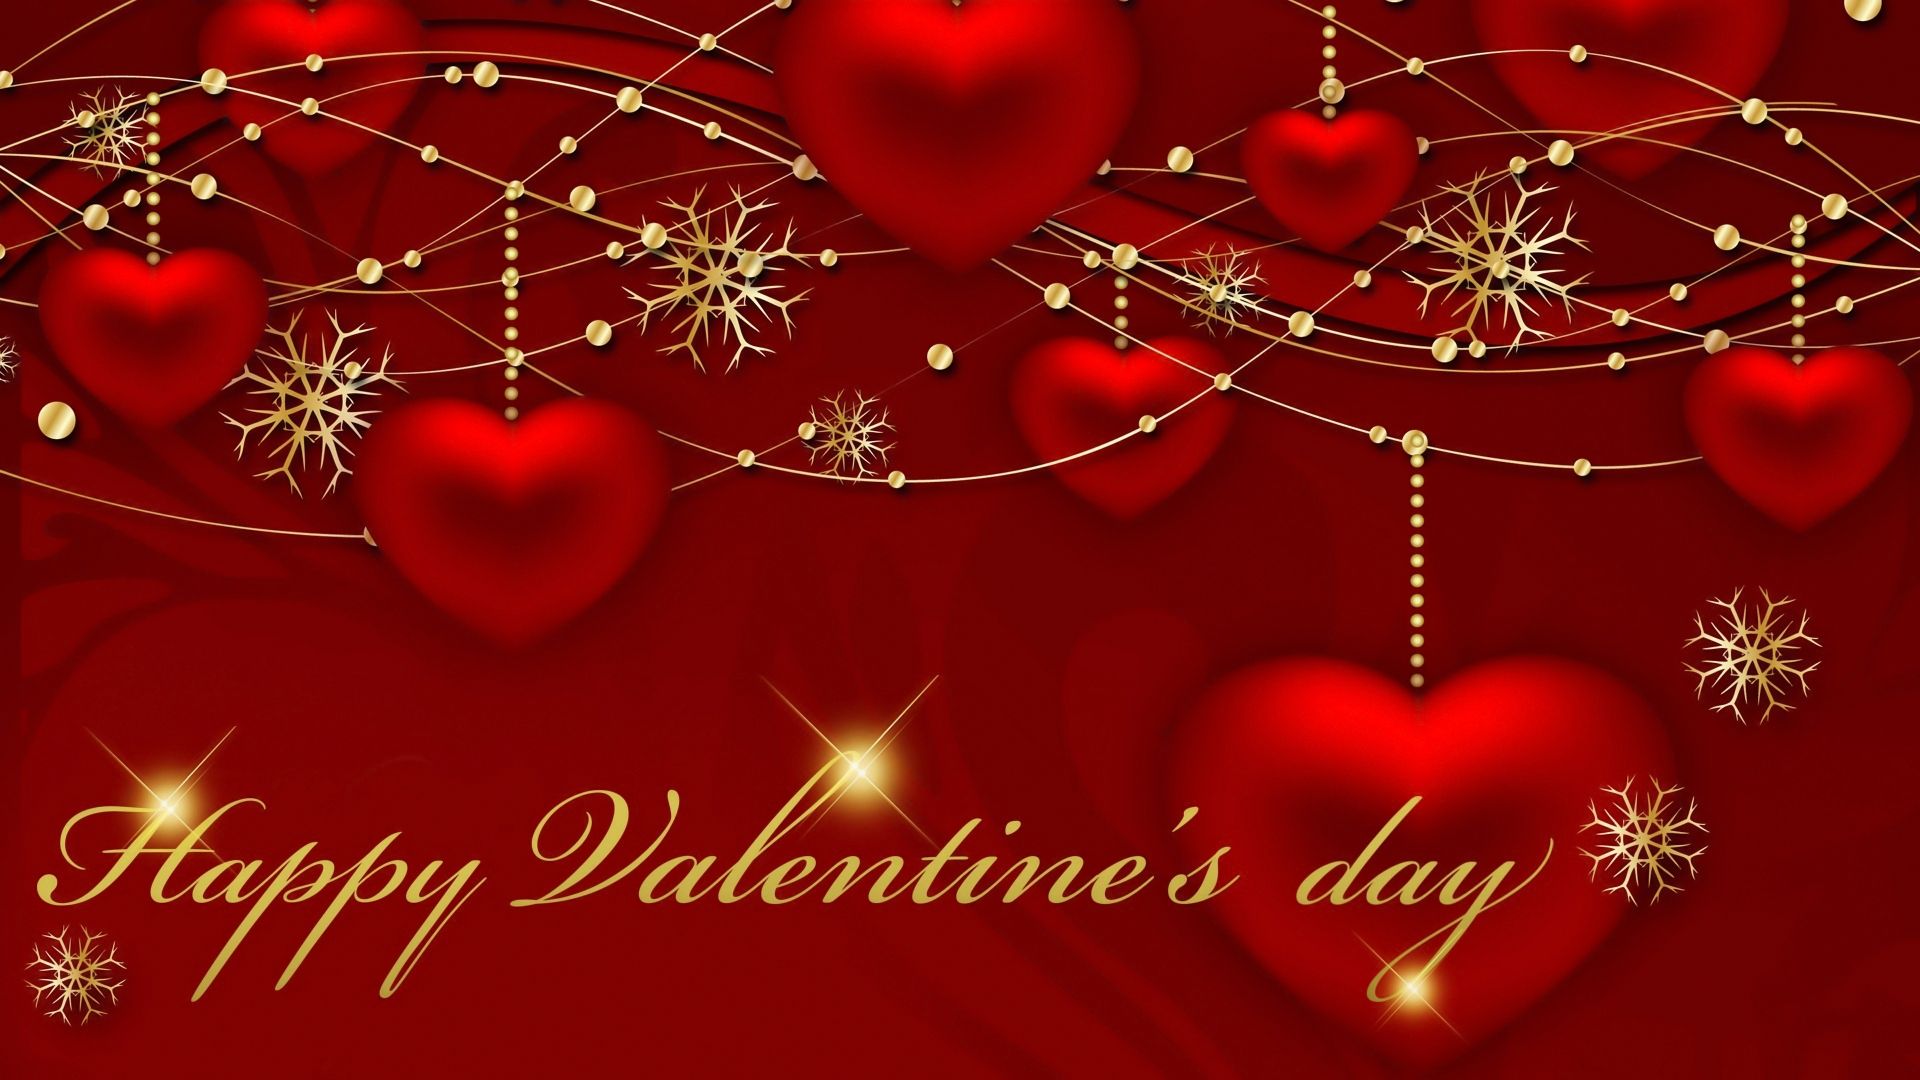 VALENTINES DAY WALLPAPER. Valentine day wallpaper hd, Valentines wallpaper, Valentines day wishes